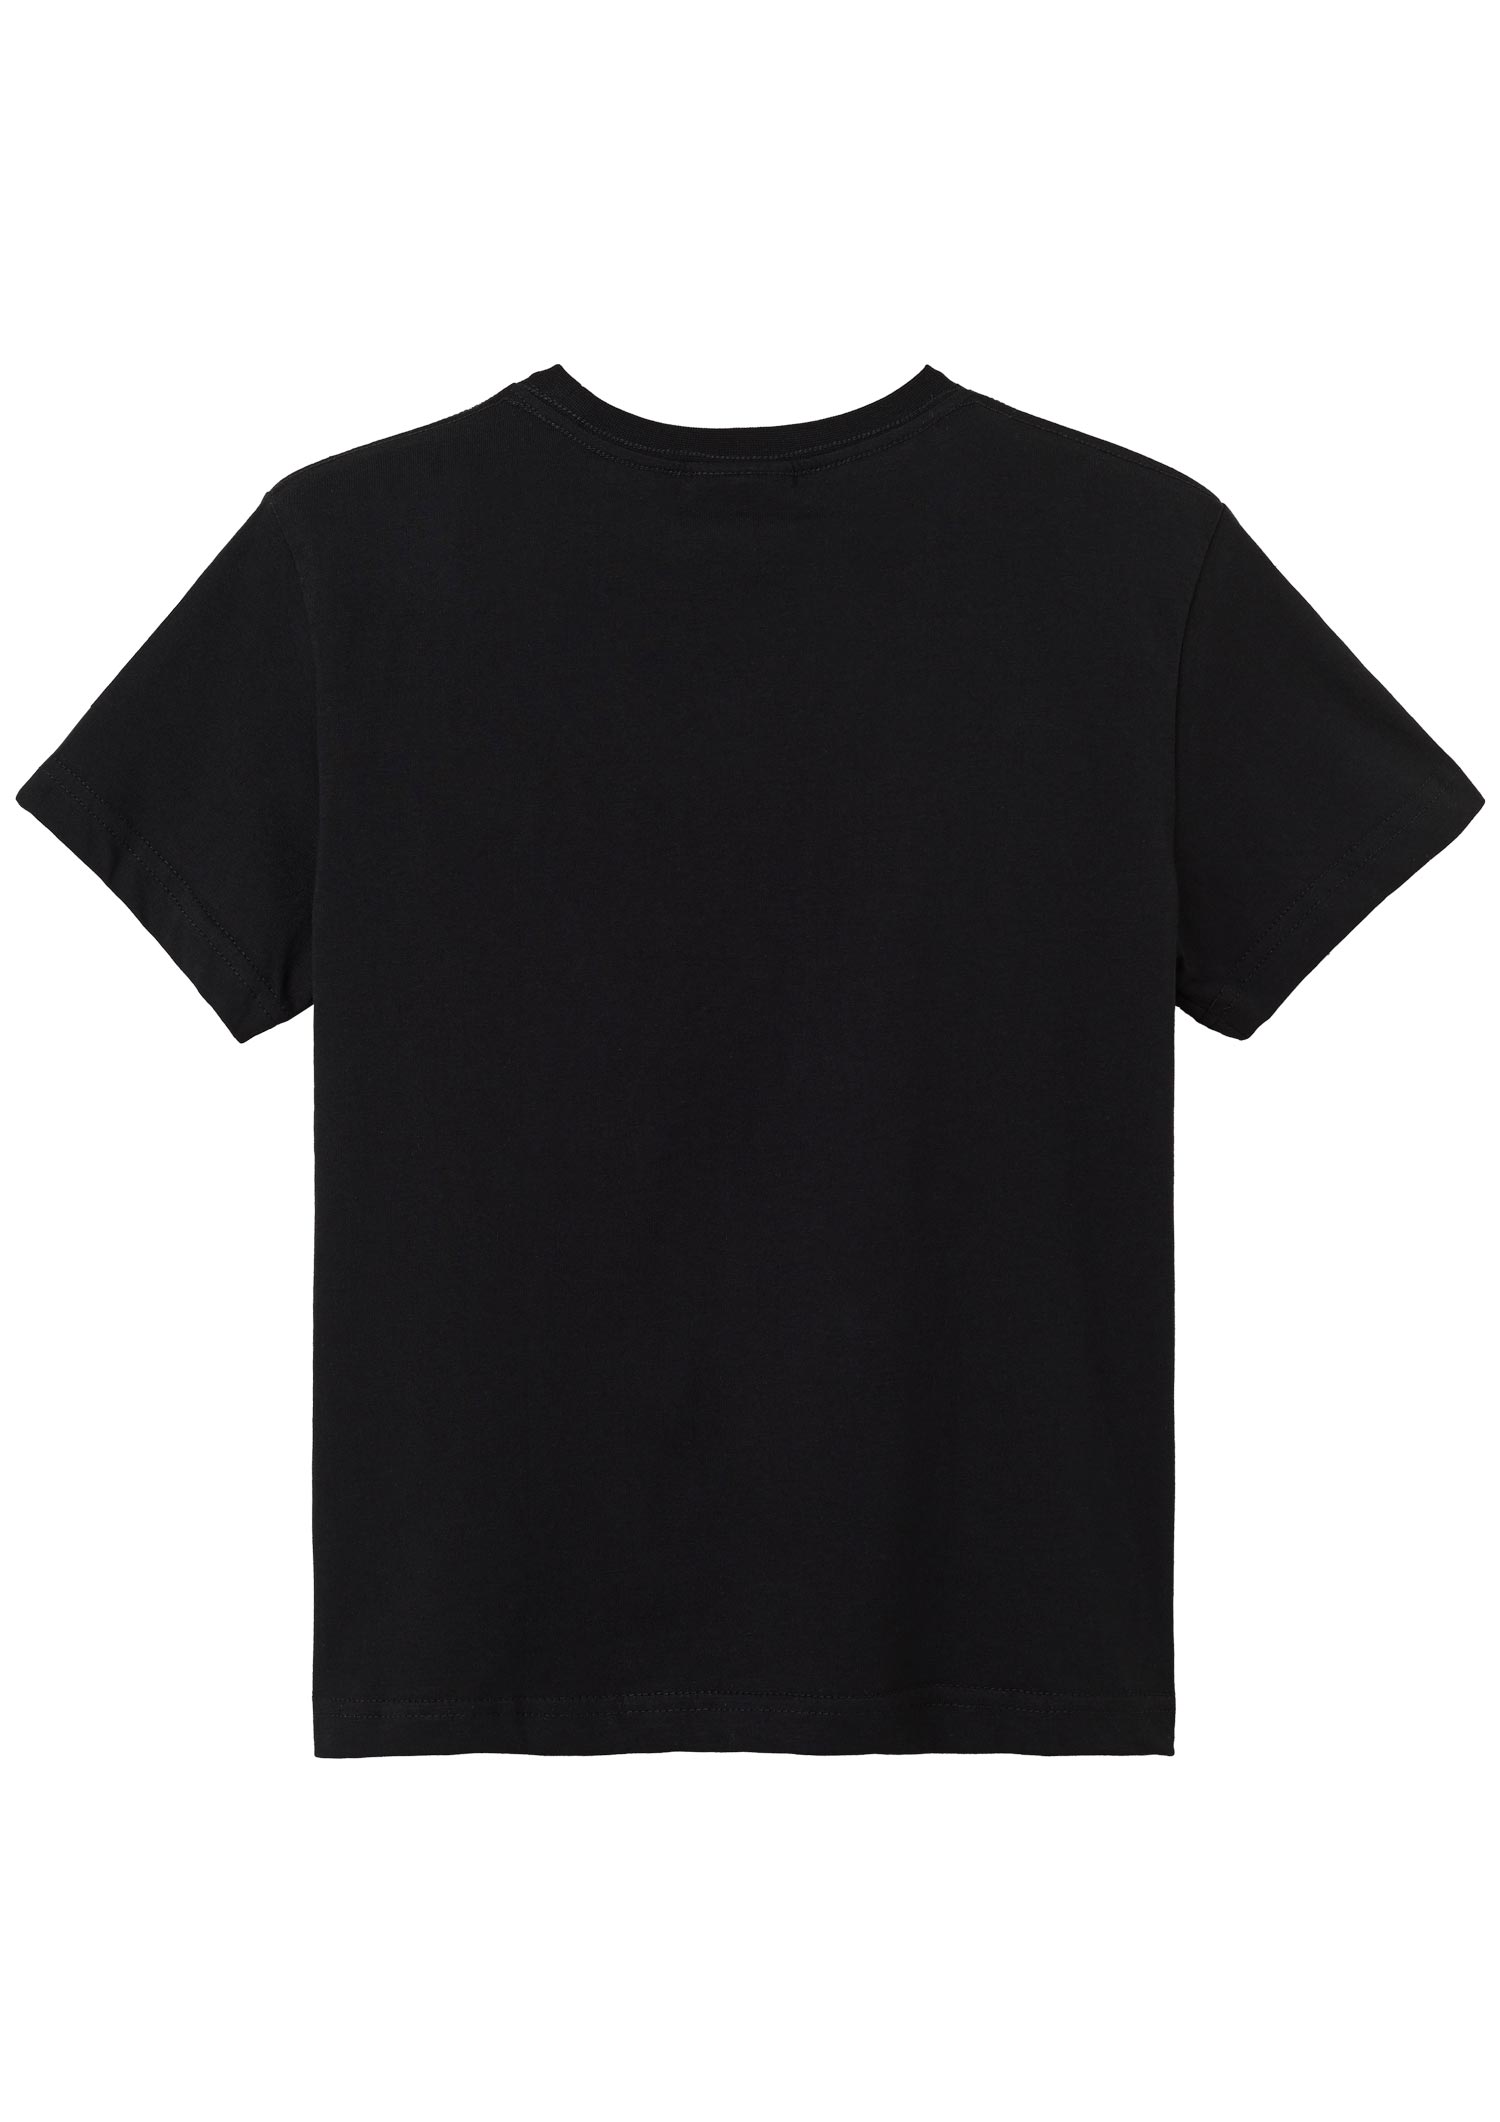 Kinder T-Shirt Glitzer schwarz-anthrazit